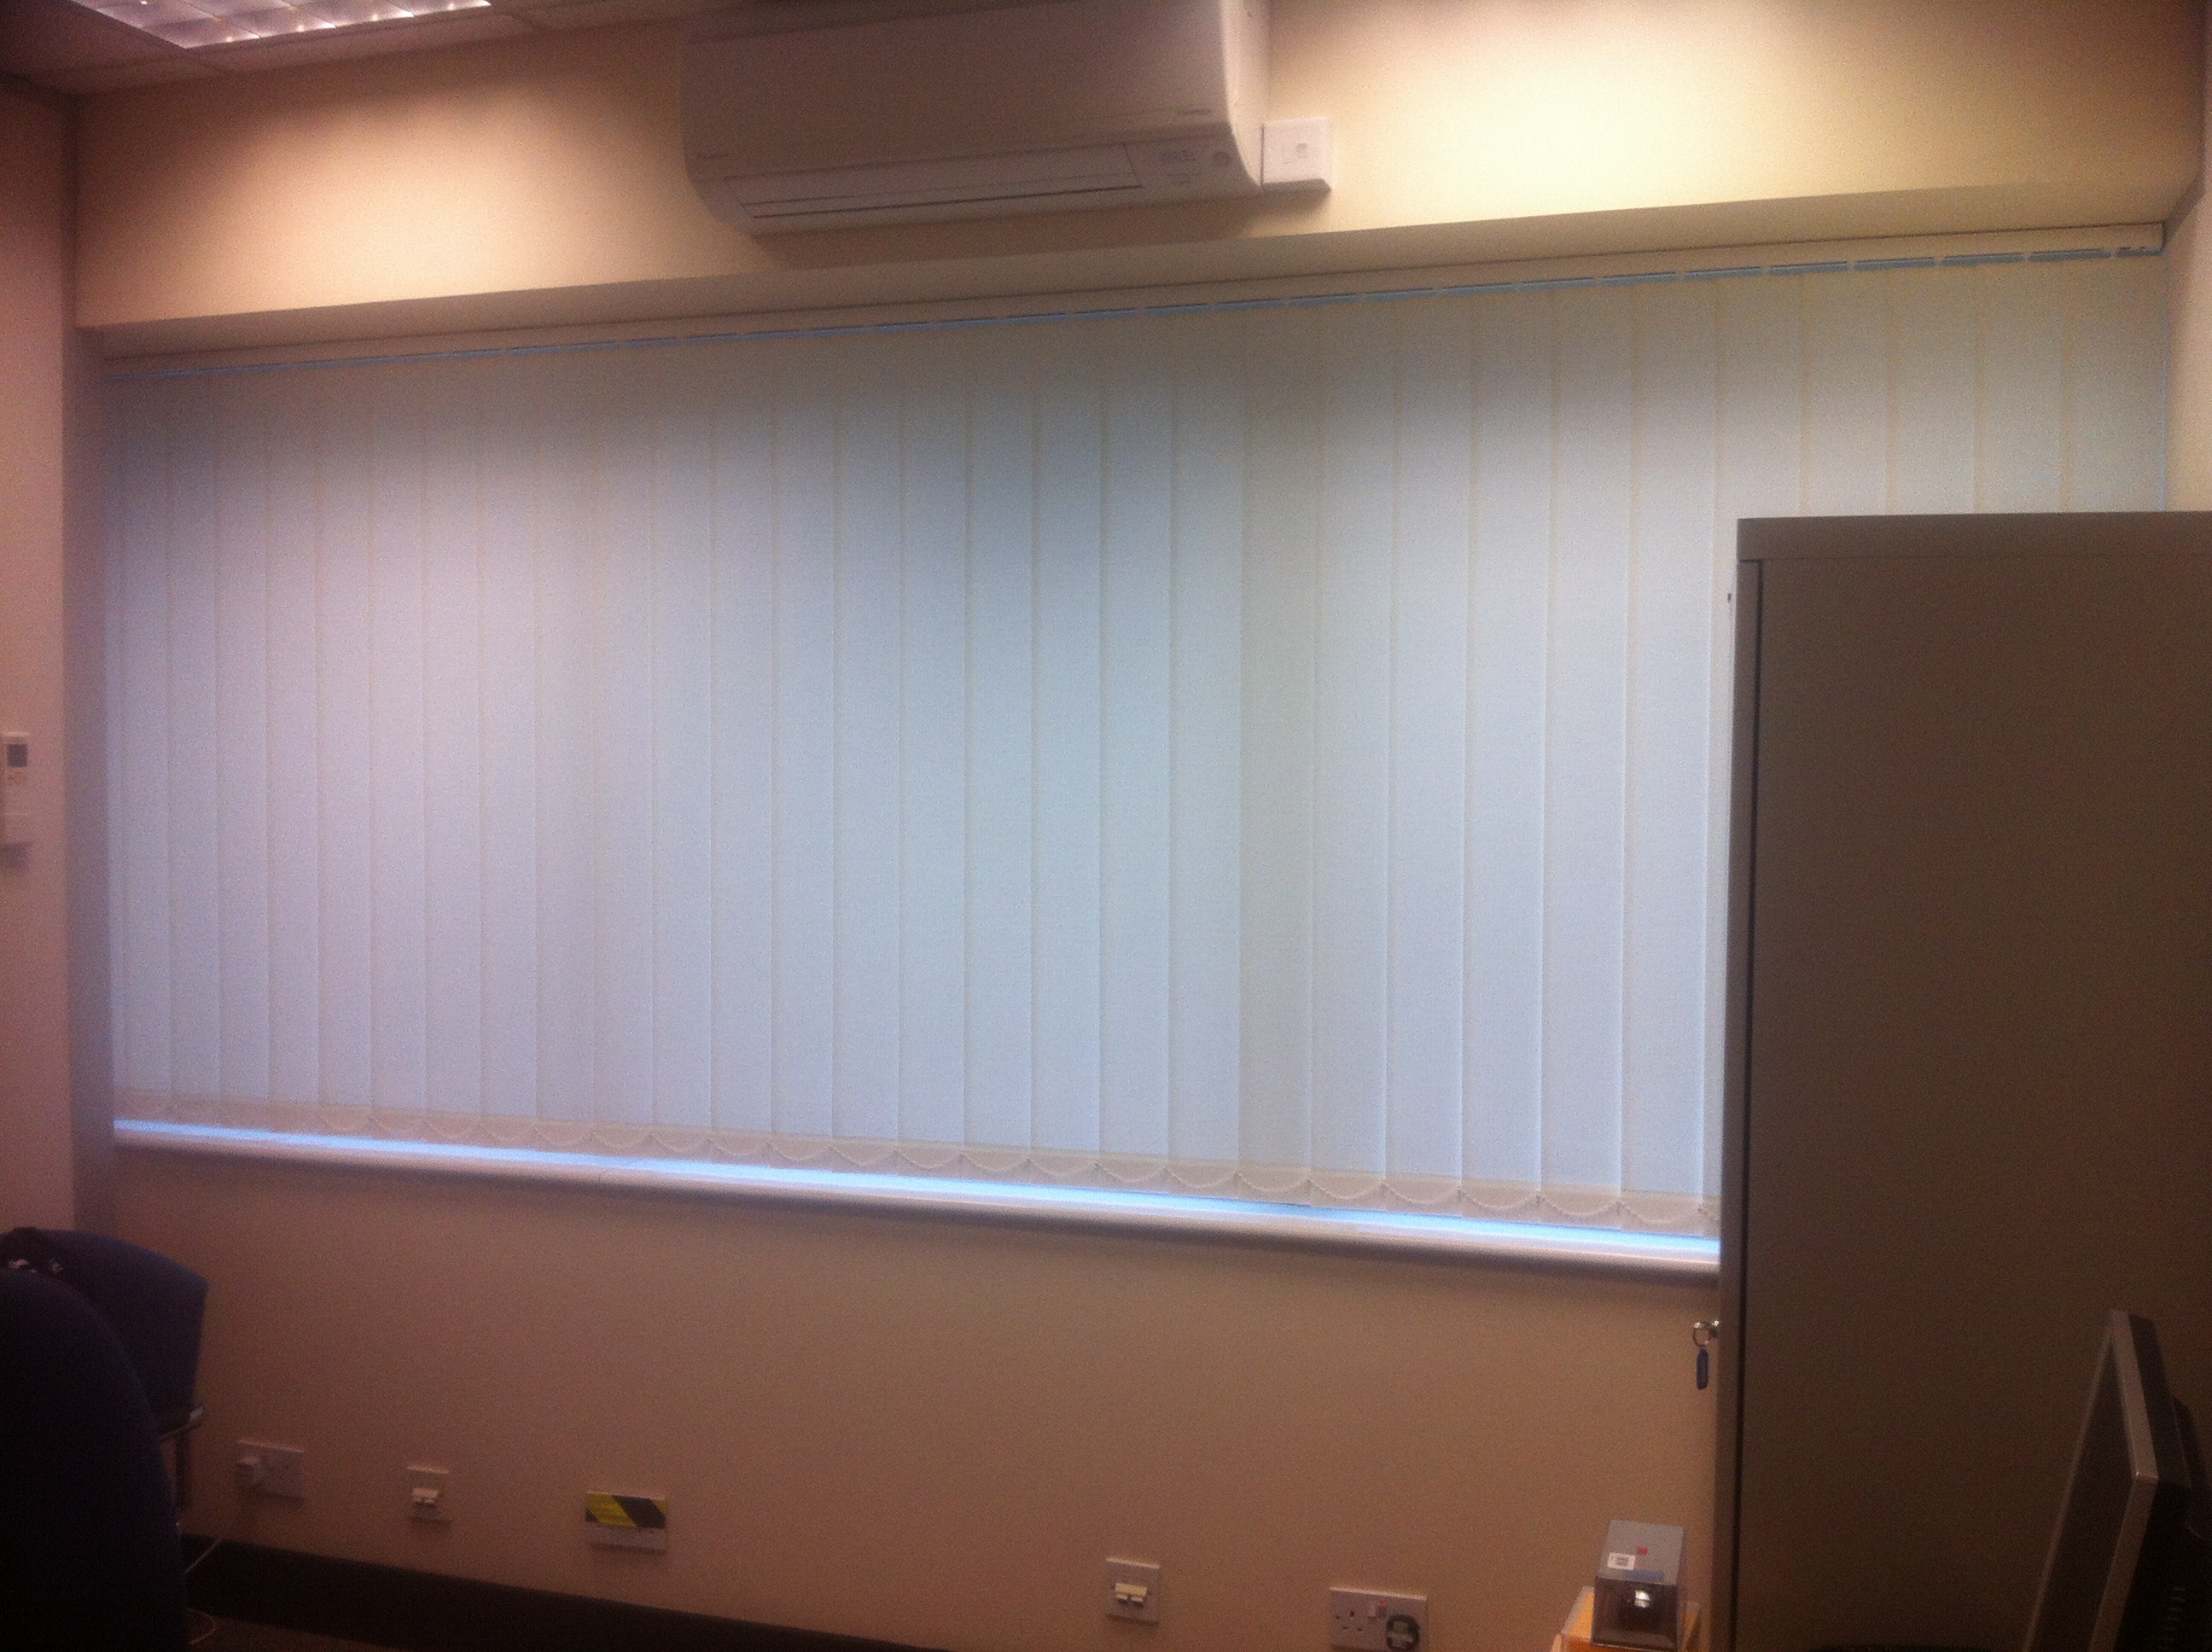 Stephen Austin Offices In Hertford  - Vertical blinds -  Carolina Blinds